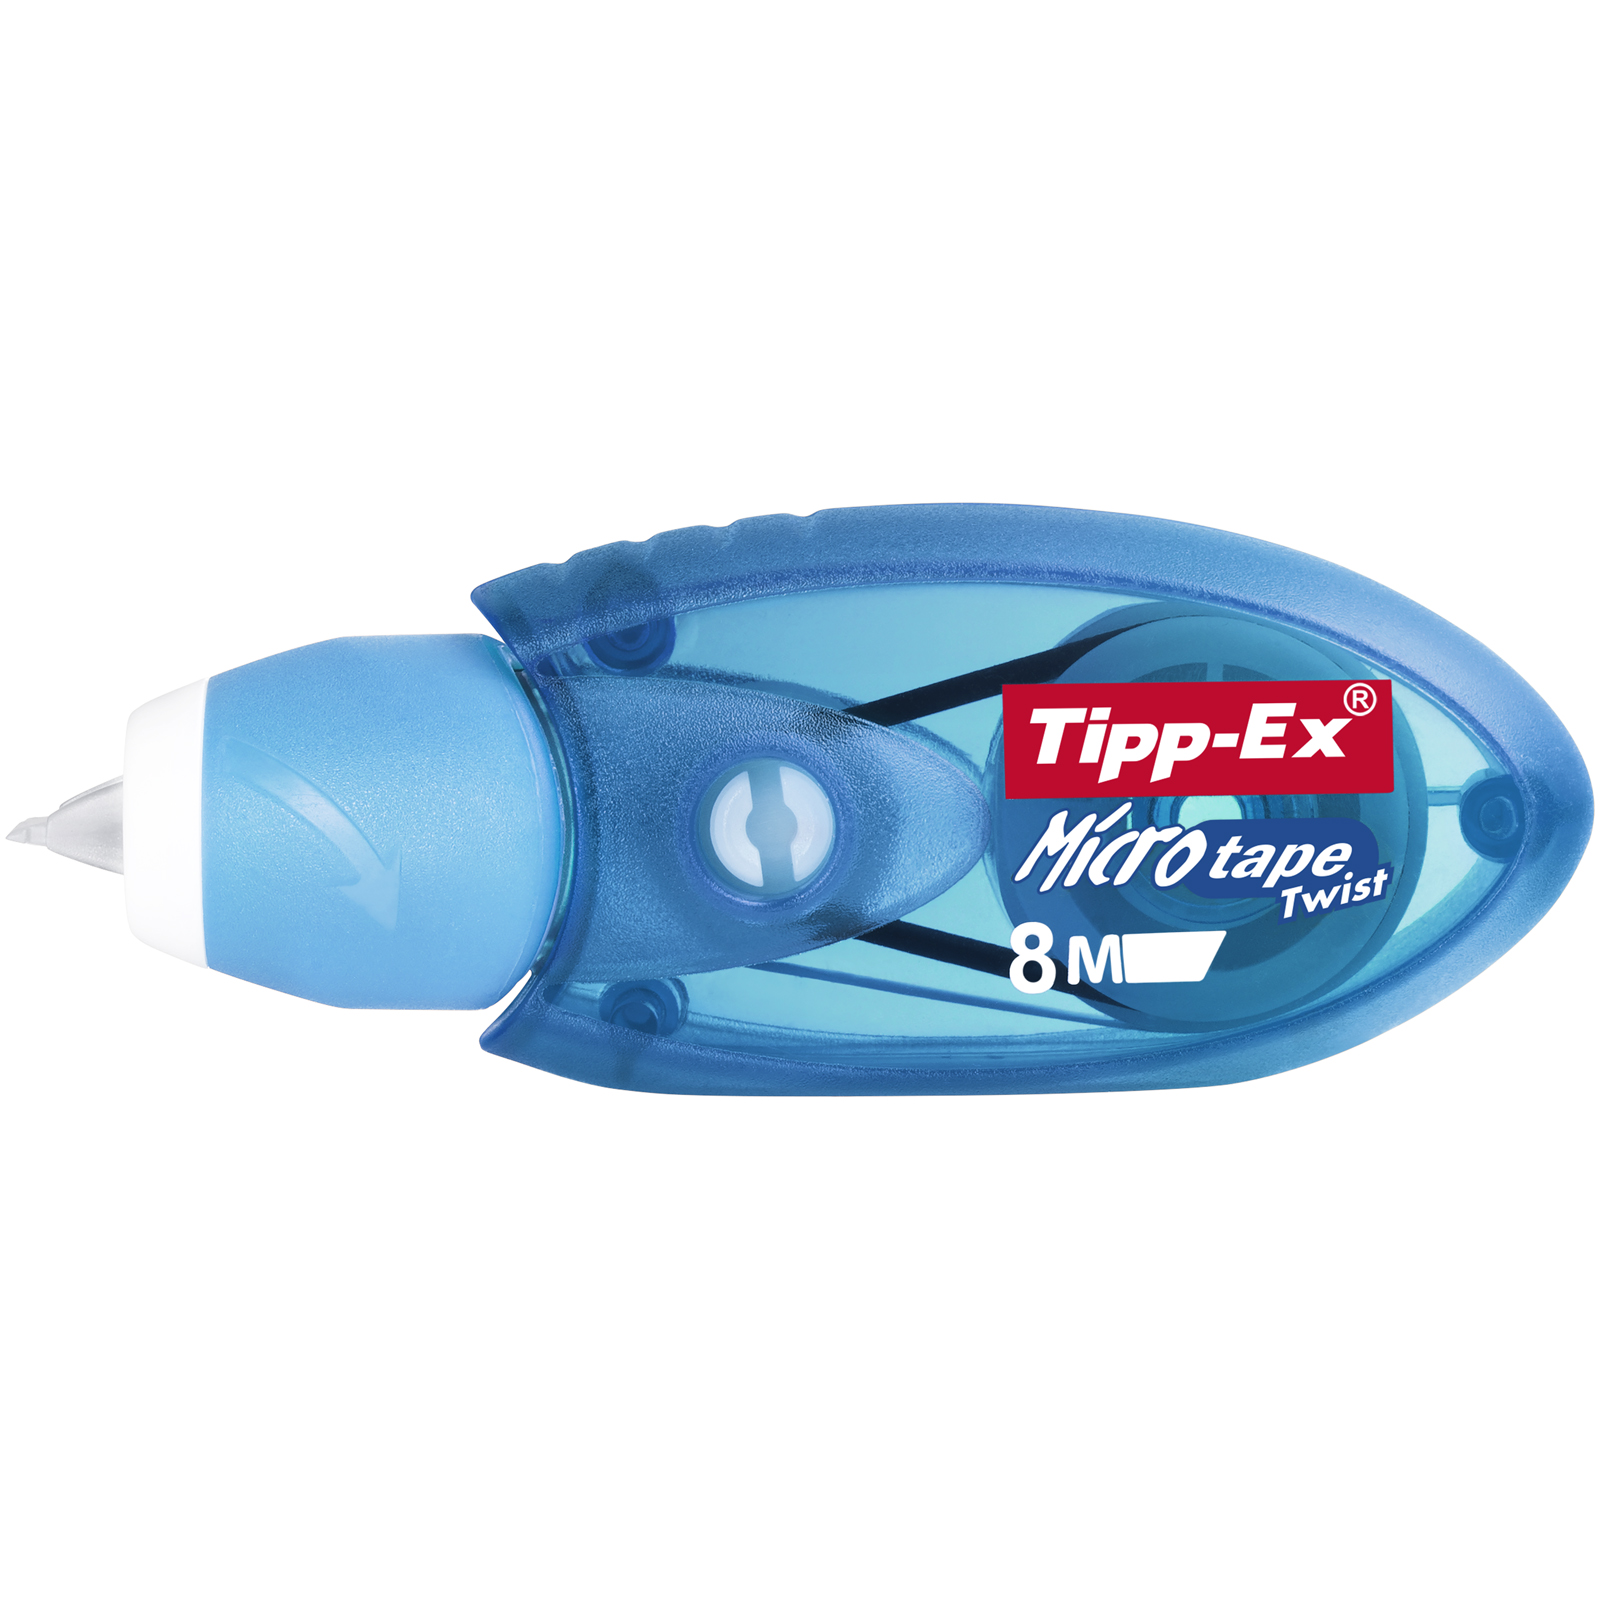 Tipp Ex Microtape Twist - Correcteur 5 mm x 8 m - disponible dans